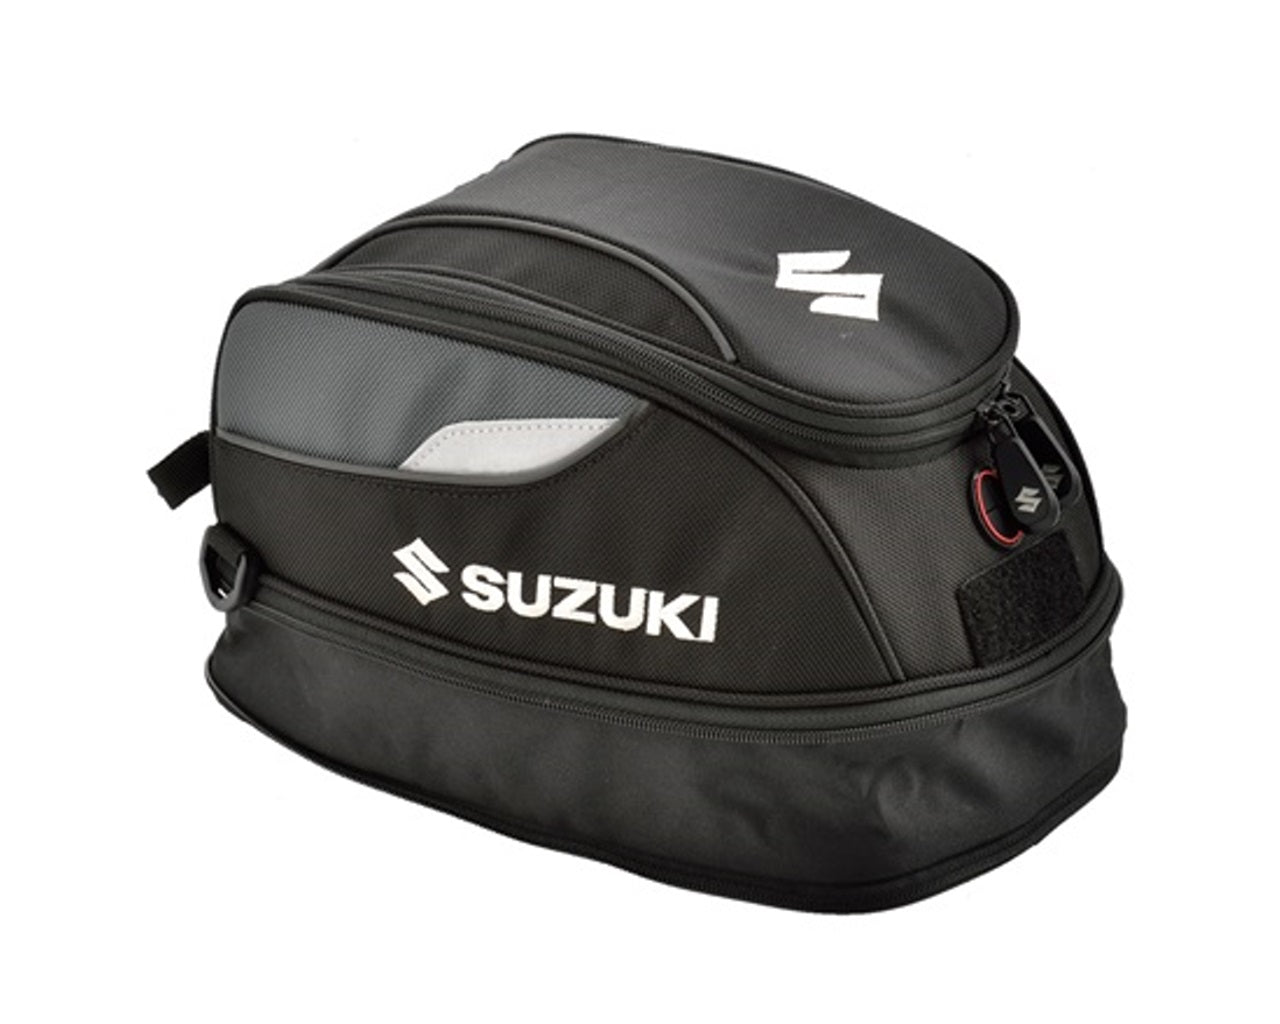 Suzuki Small Ring Lock Tank Bag Vstrom 1000 650 GSX-R SV650 990D0-04300